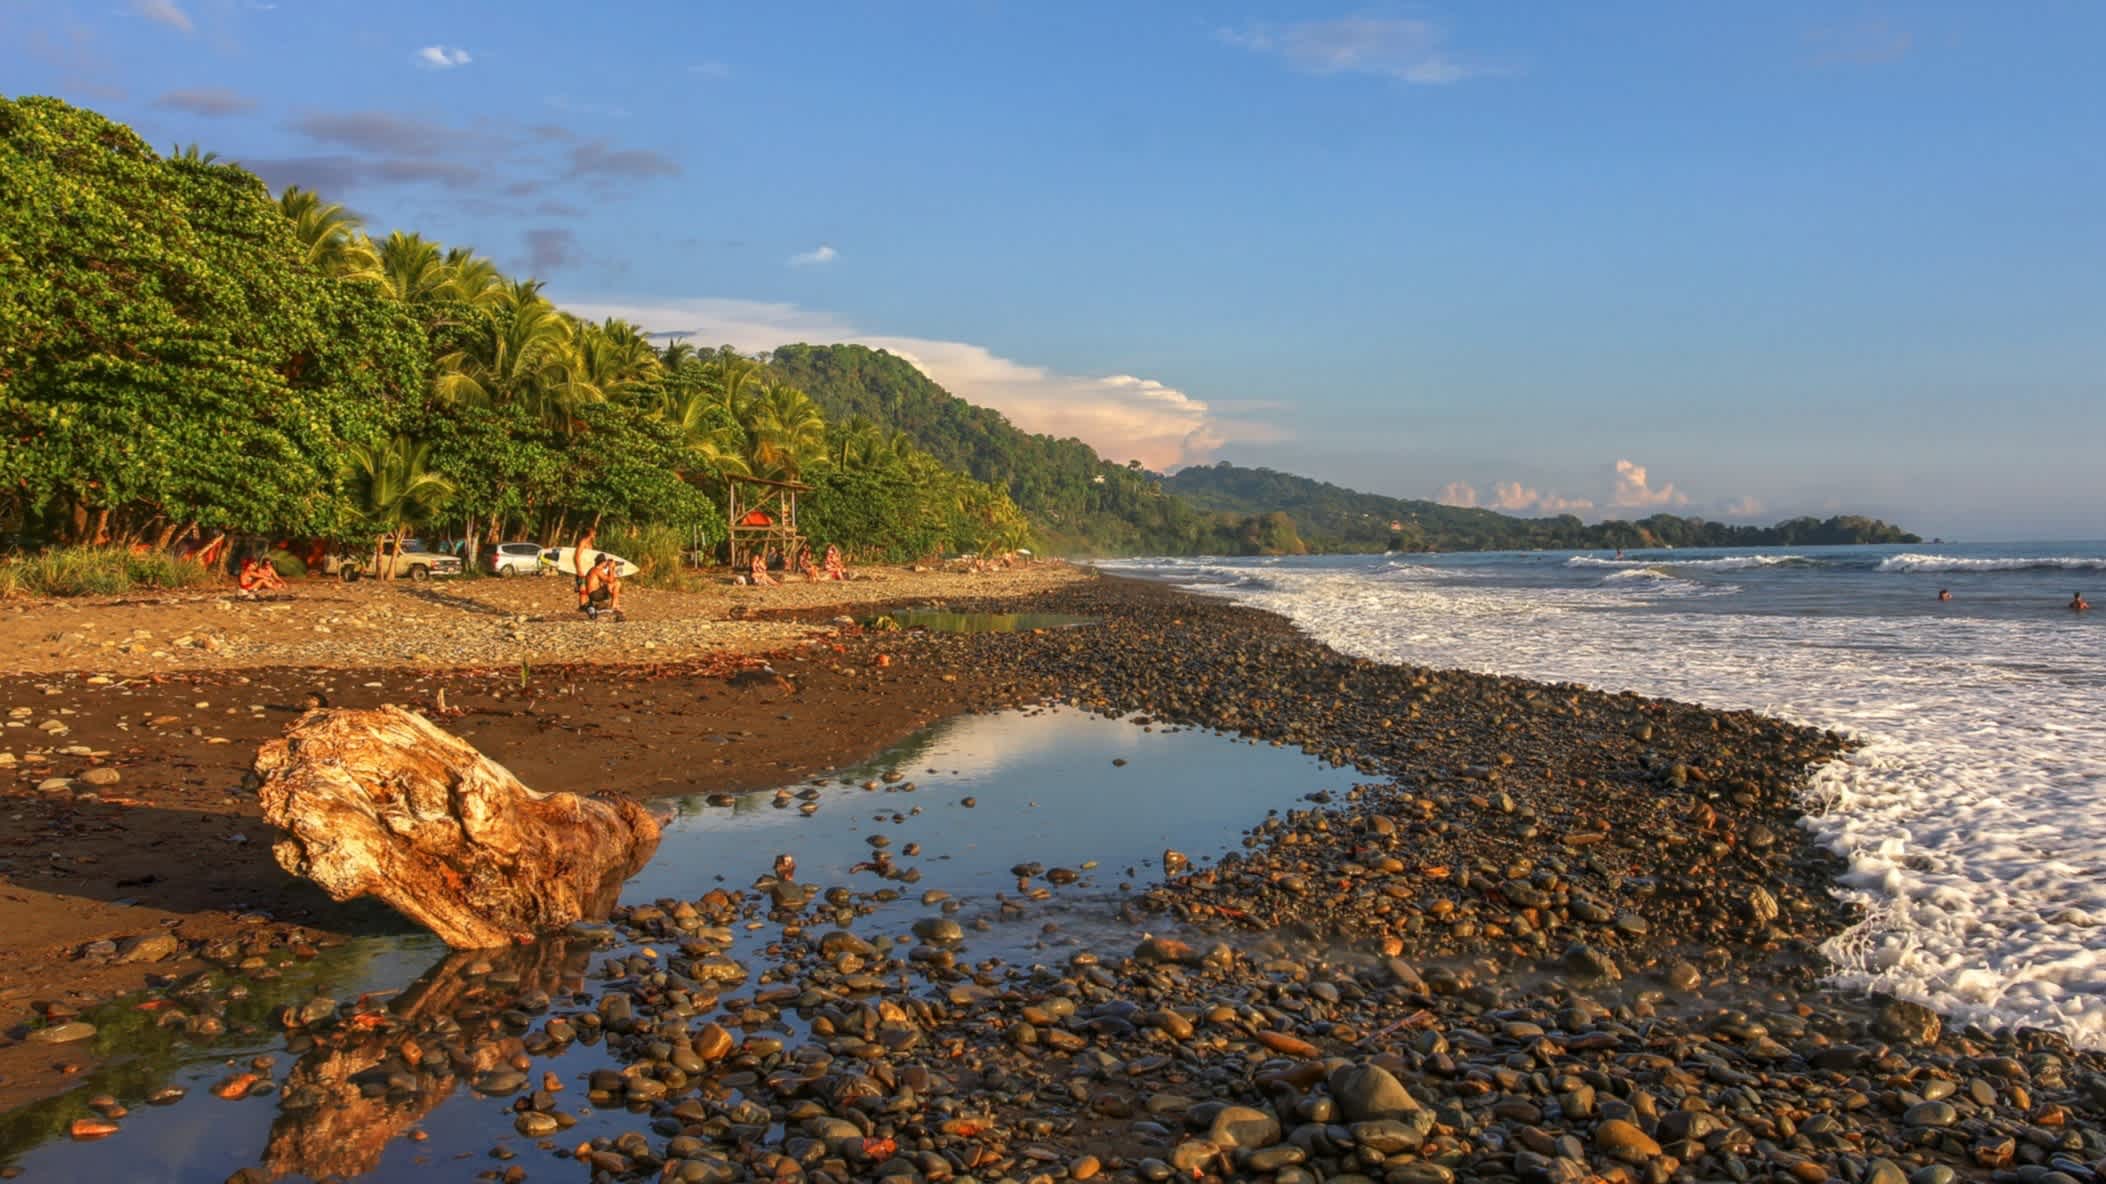 Der Strand Playa Dominical in Costa Rica mit seinem steinigen Kieselsand und Felsen sowie dem Meer im Vordergrund und dichtem Dschungel im Hintergrund bei Sonnenschein.
